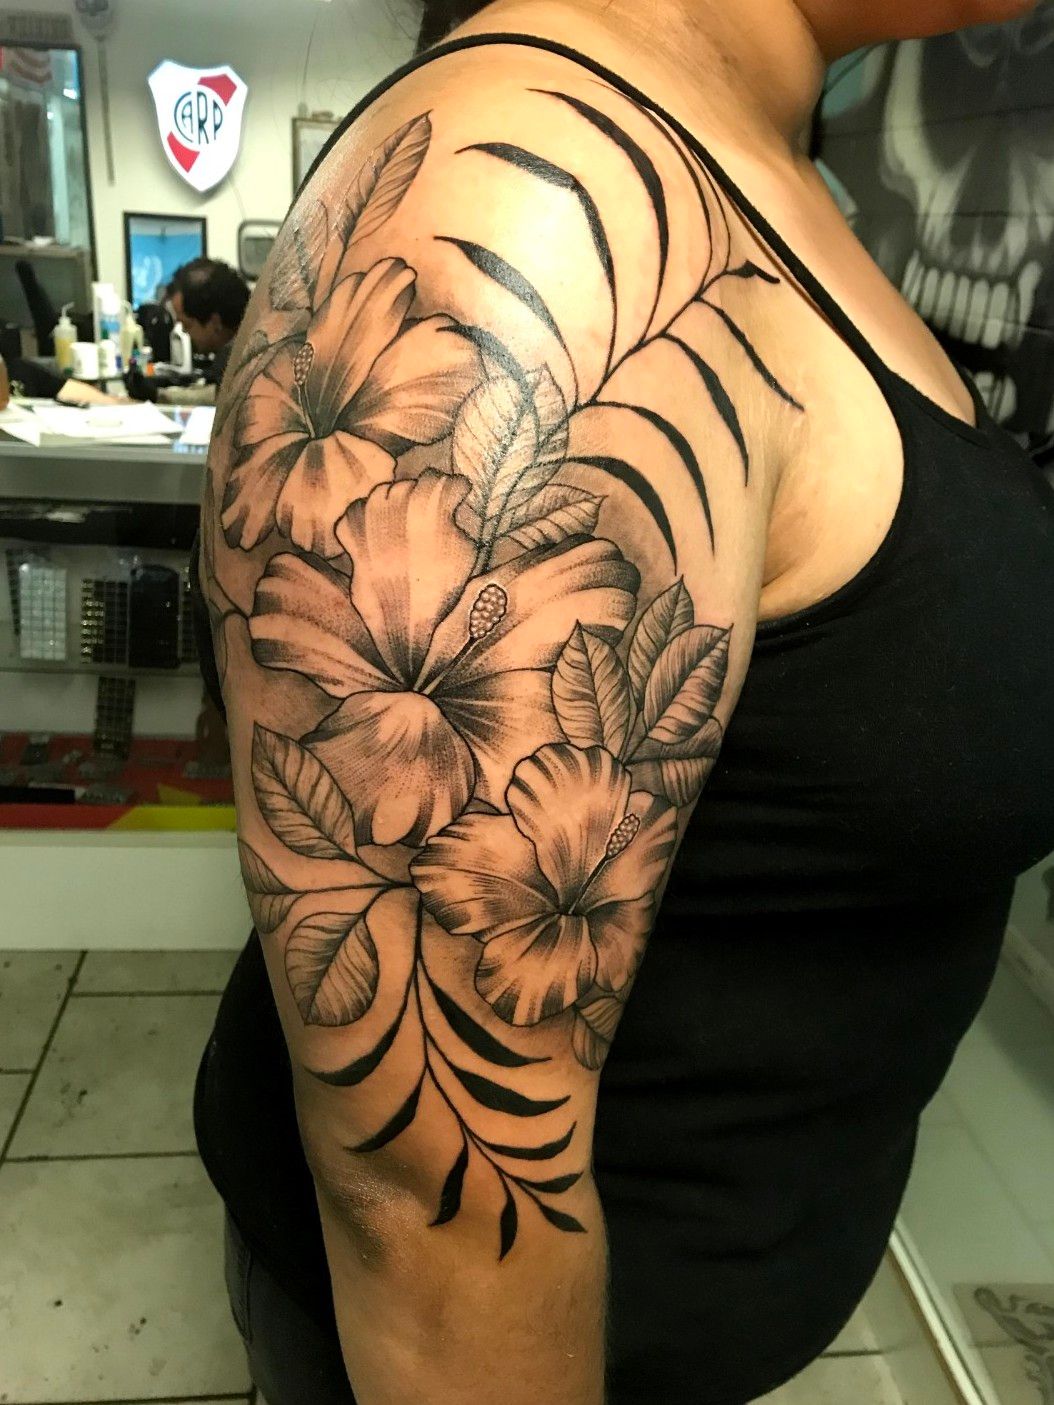 Flower tattoo tropical flowers half sleeve forearm sleeve  Flower tattoo  Flower sleeve Flower tattoo sleeve